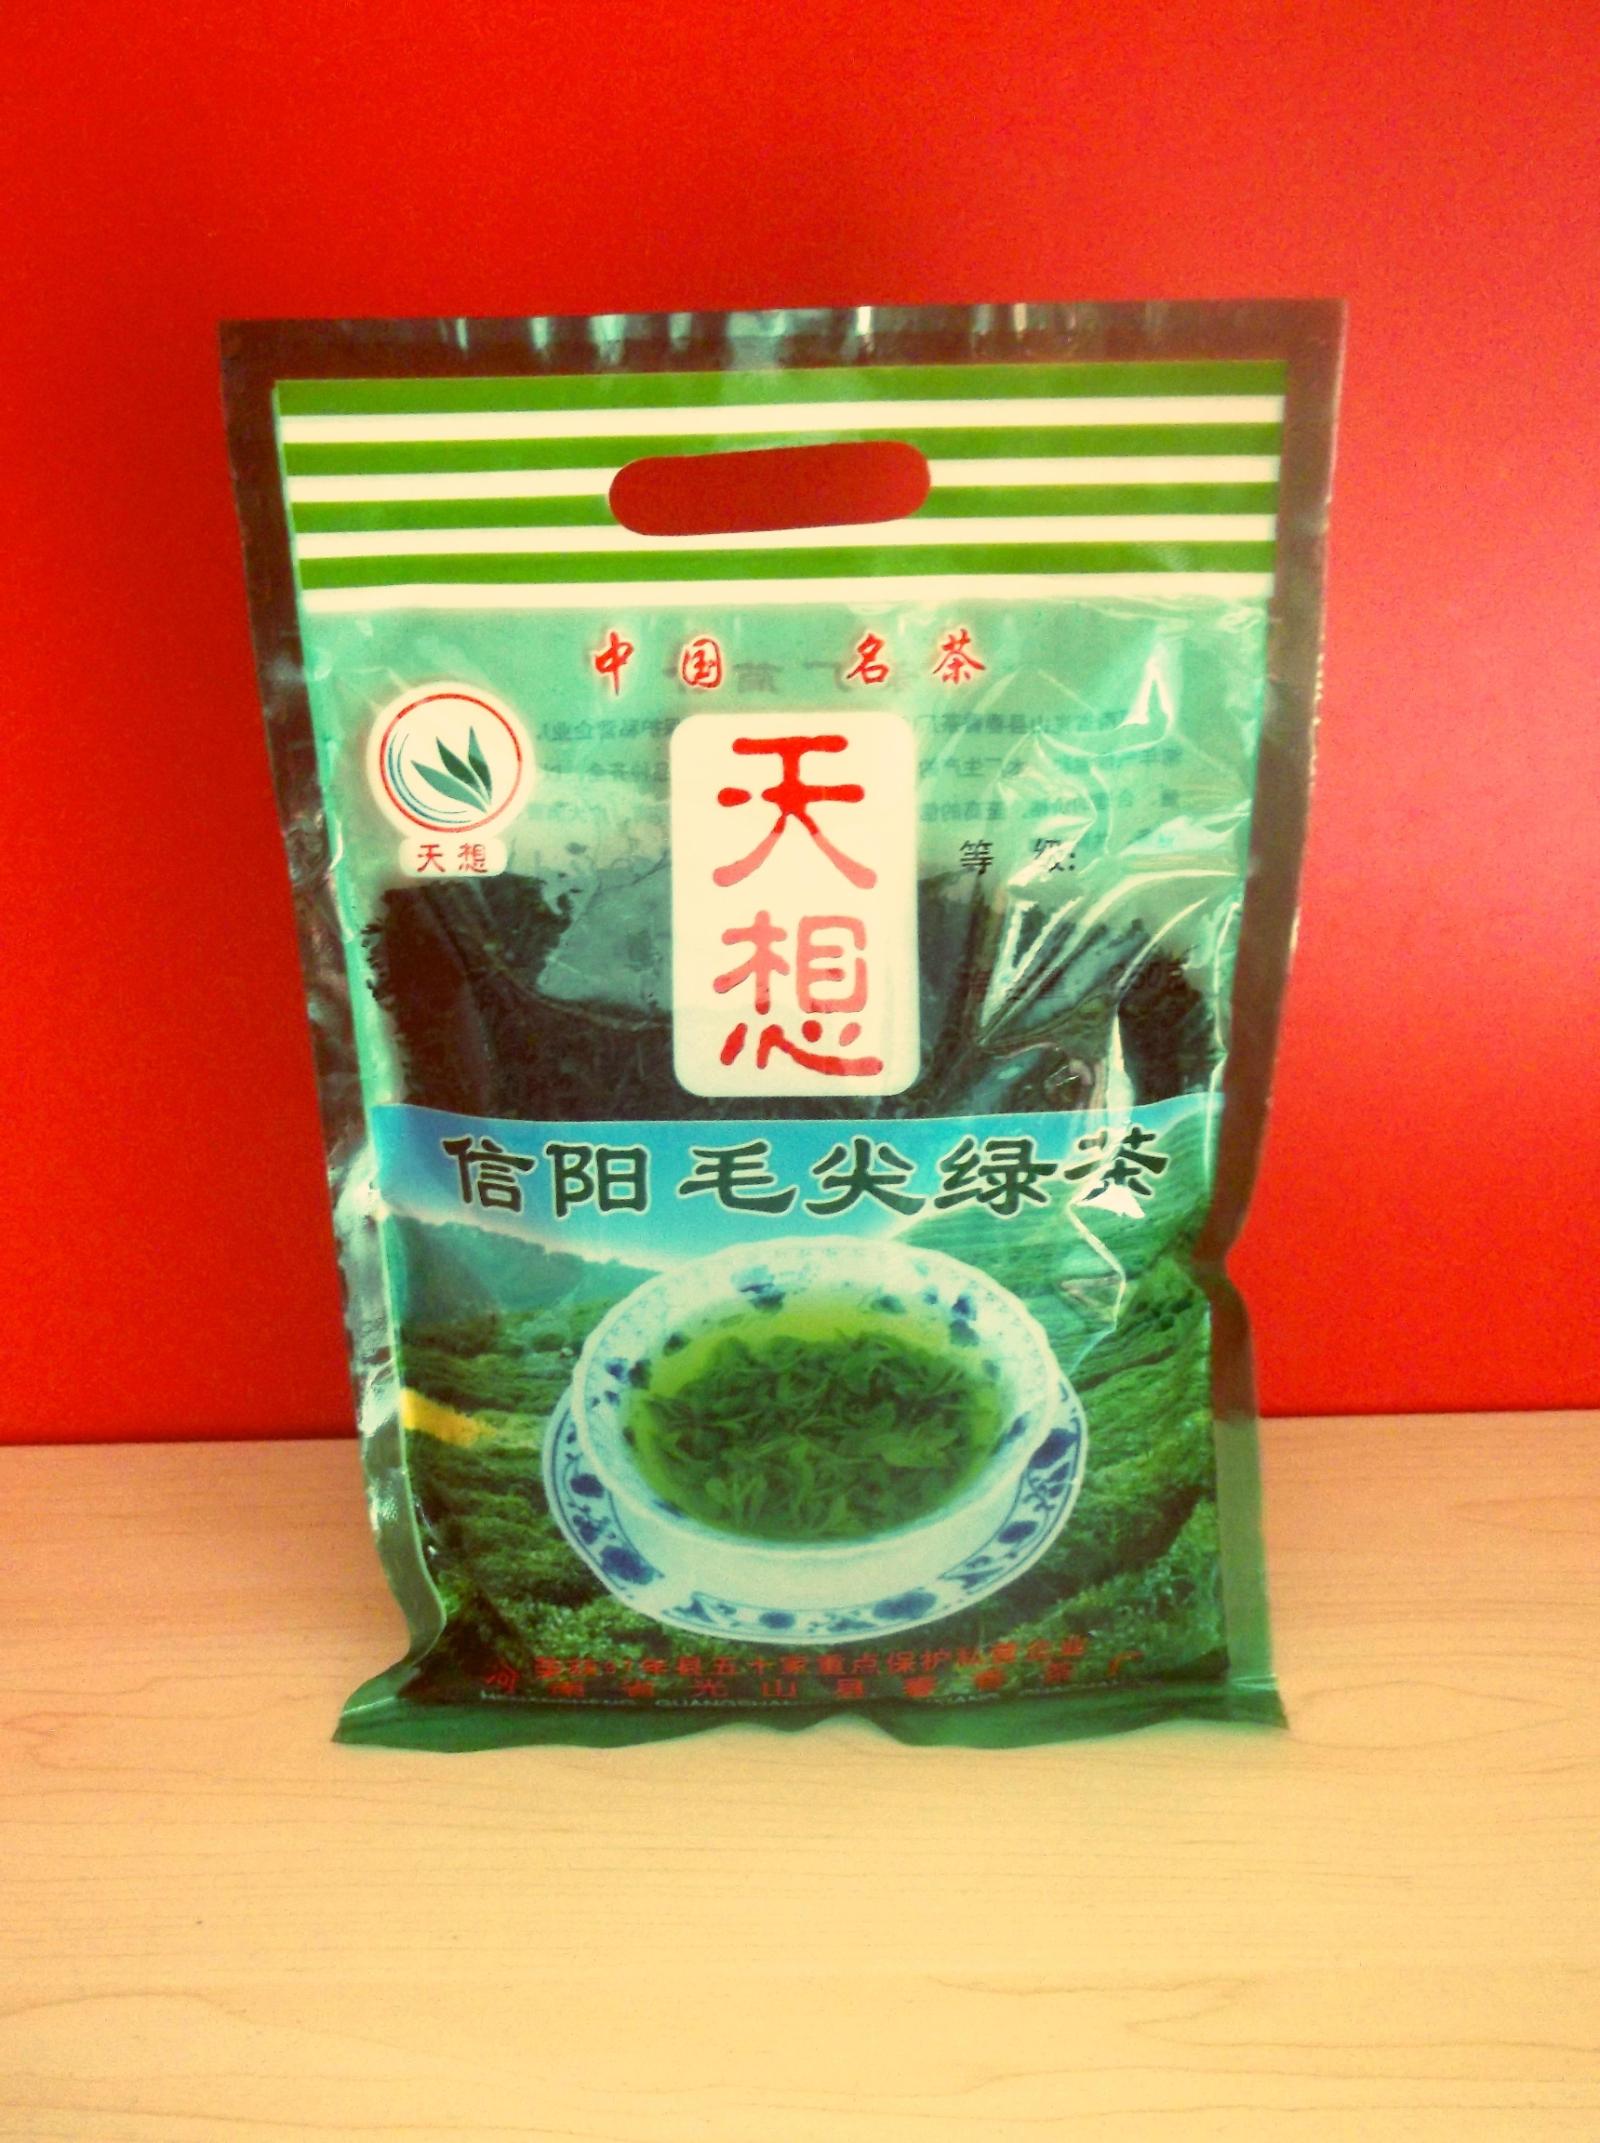 信阳毛尖250克袋装绿茶河南光山茶叶天想农产品茶厂手工茶炒青茶